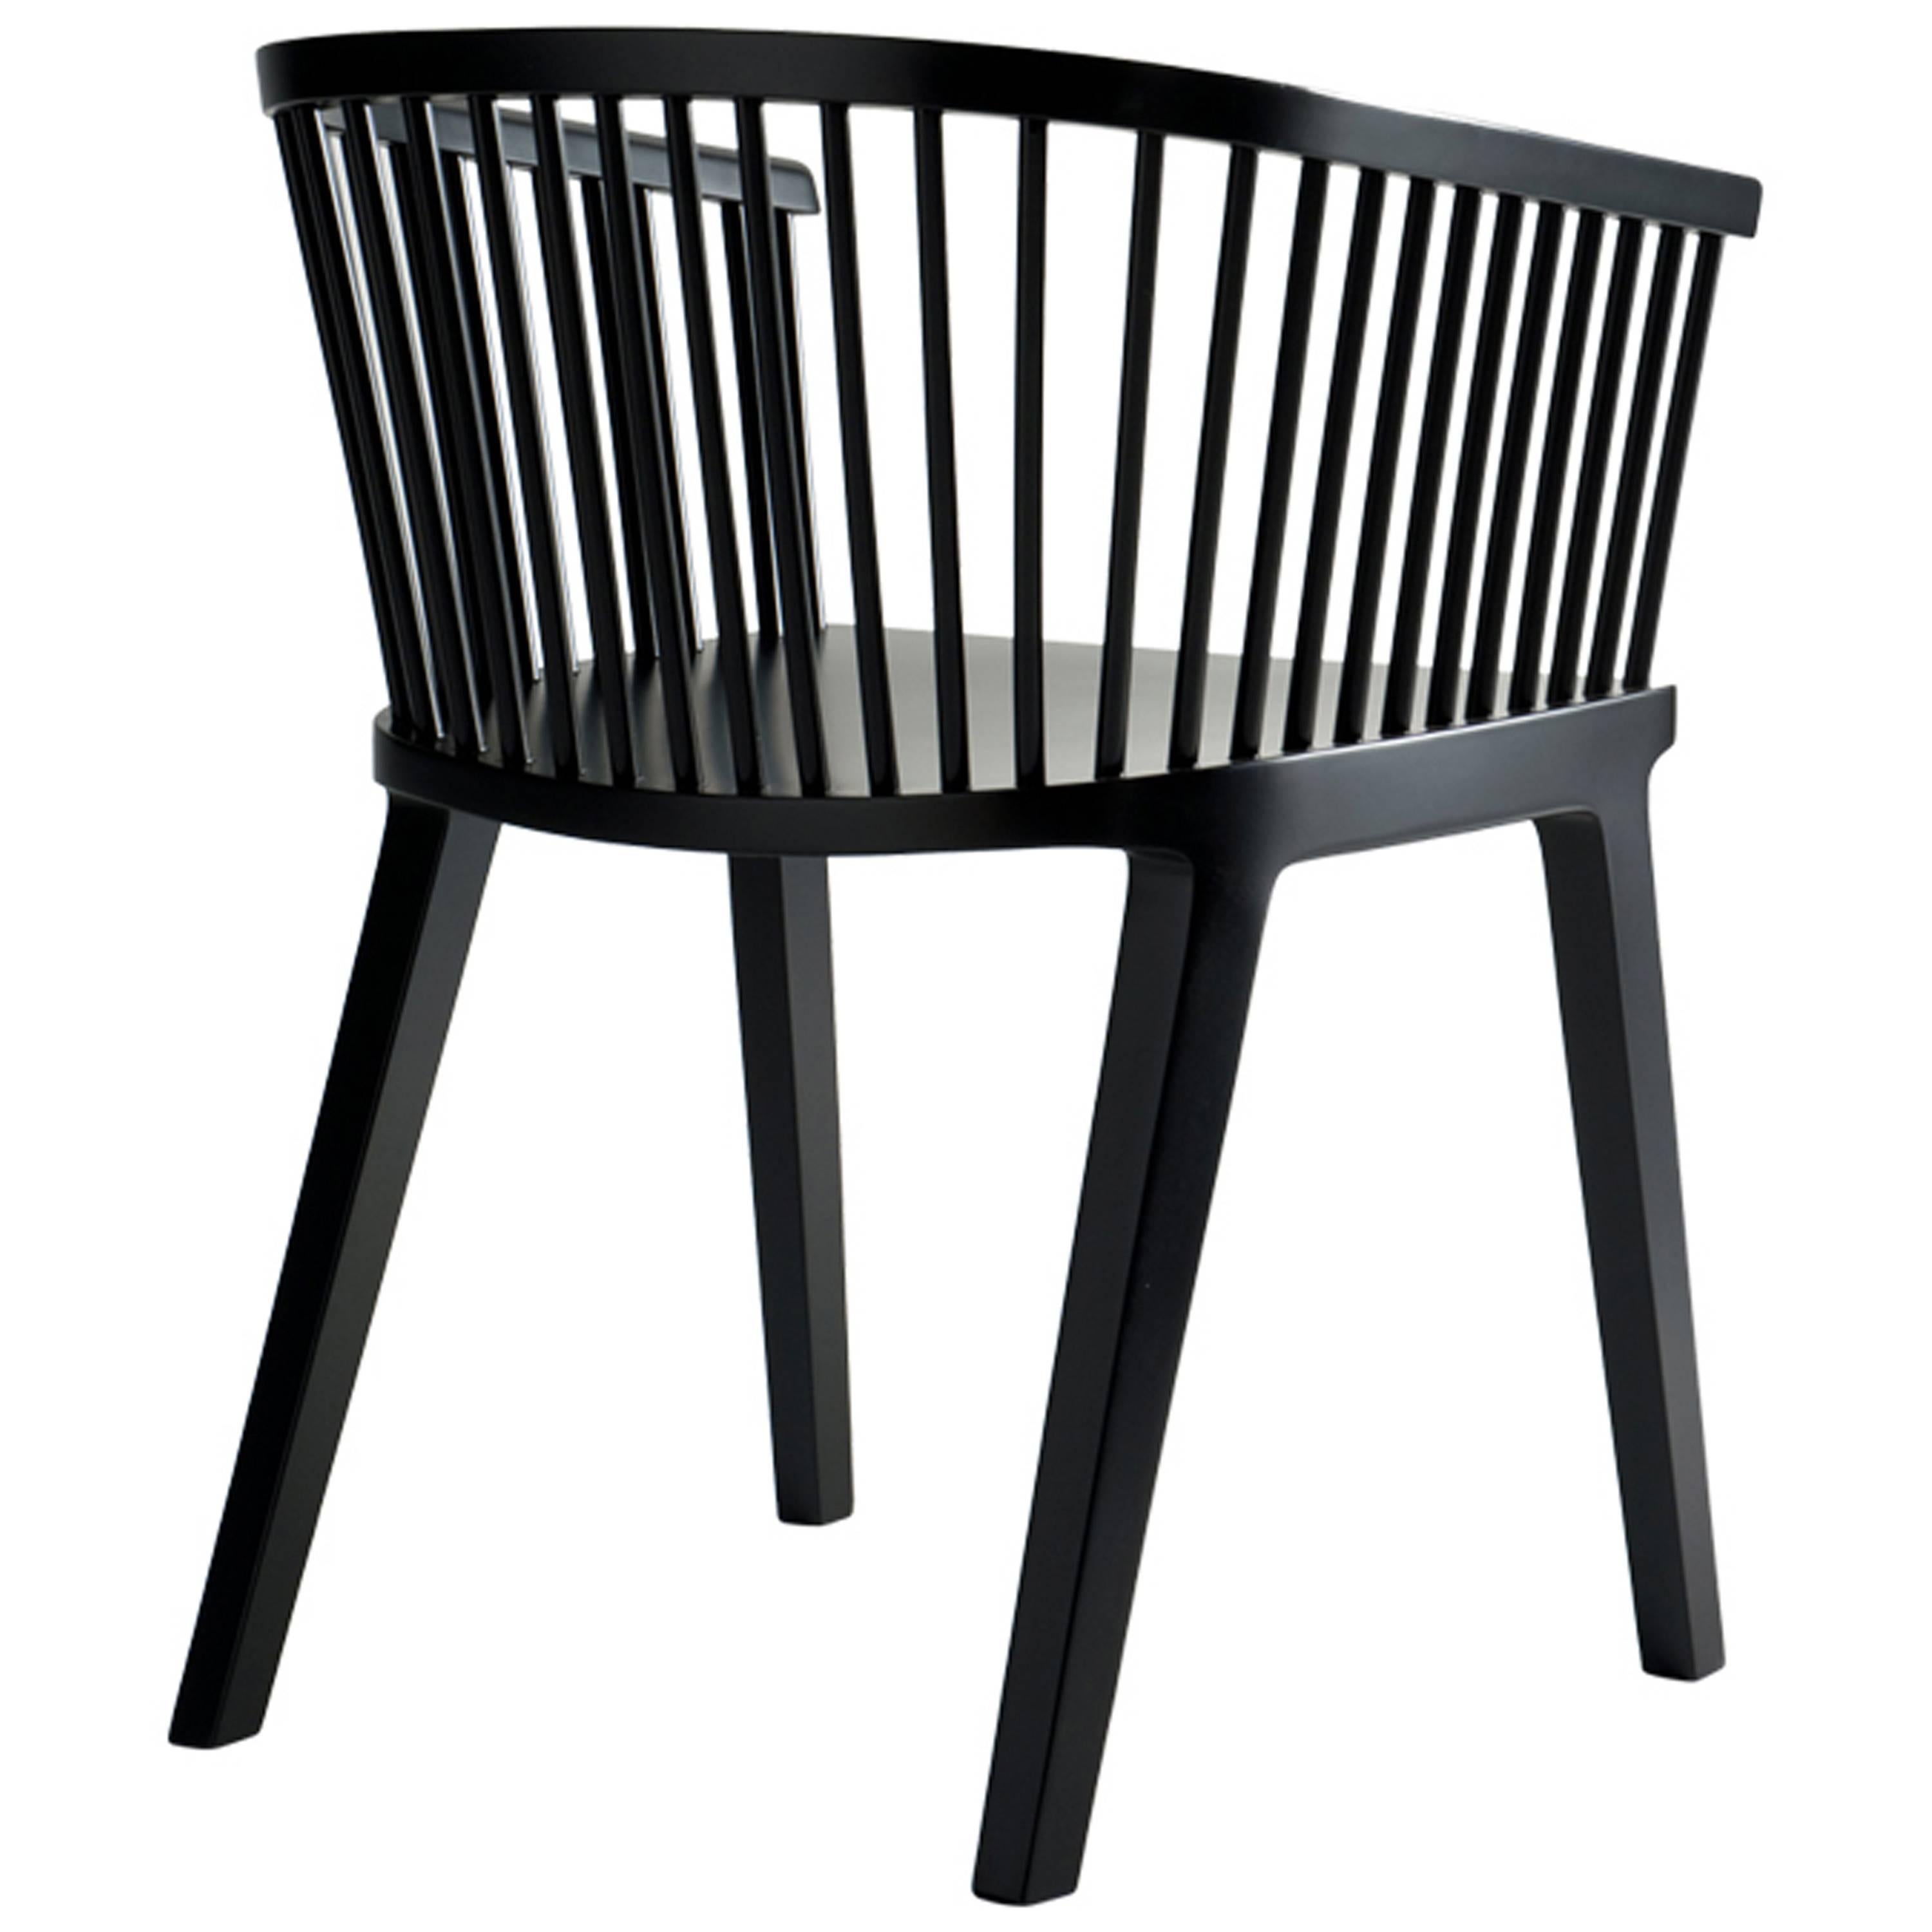 Secreto Sessel, zeitgenössisches Design inspiriert von traditionellen Winsor-Sesseln